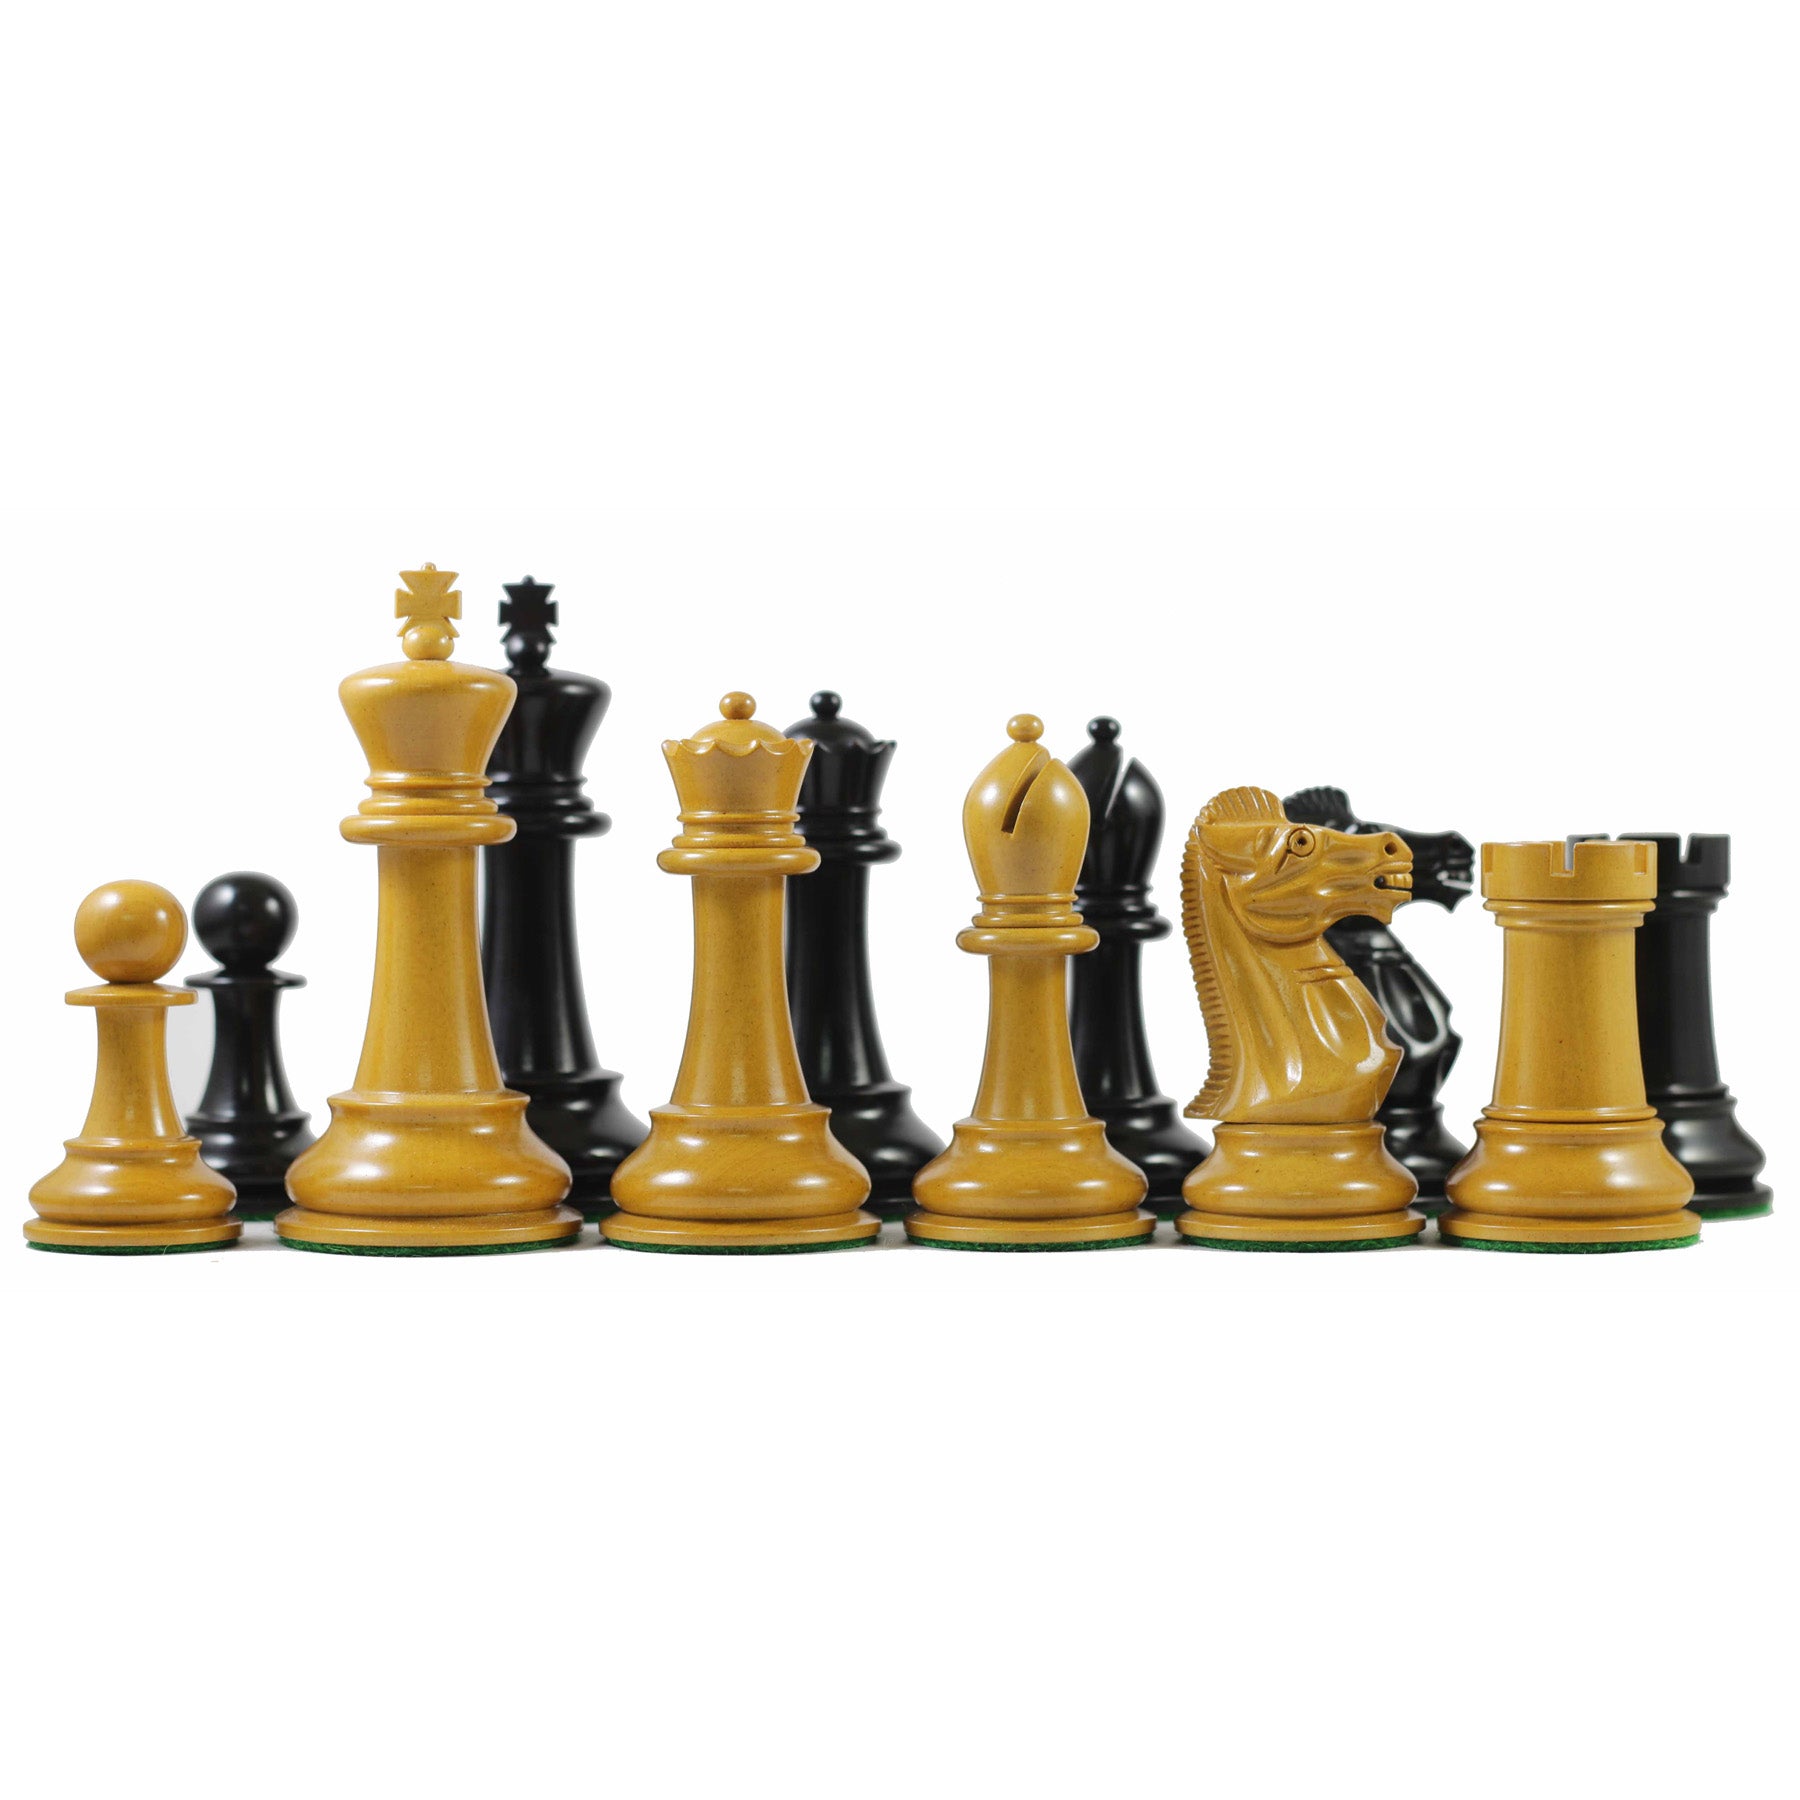 staunton - A lojinha de xadrez que virou mania nacional!